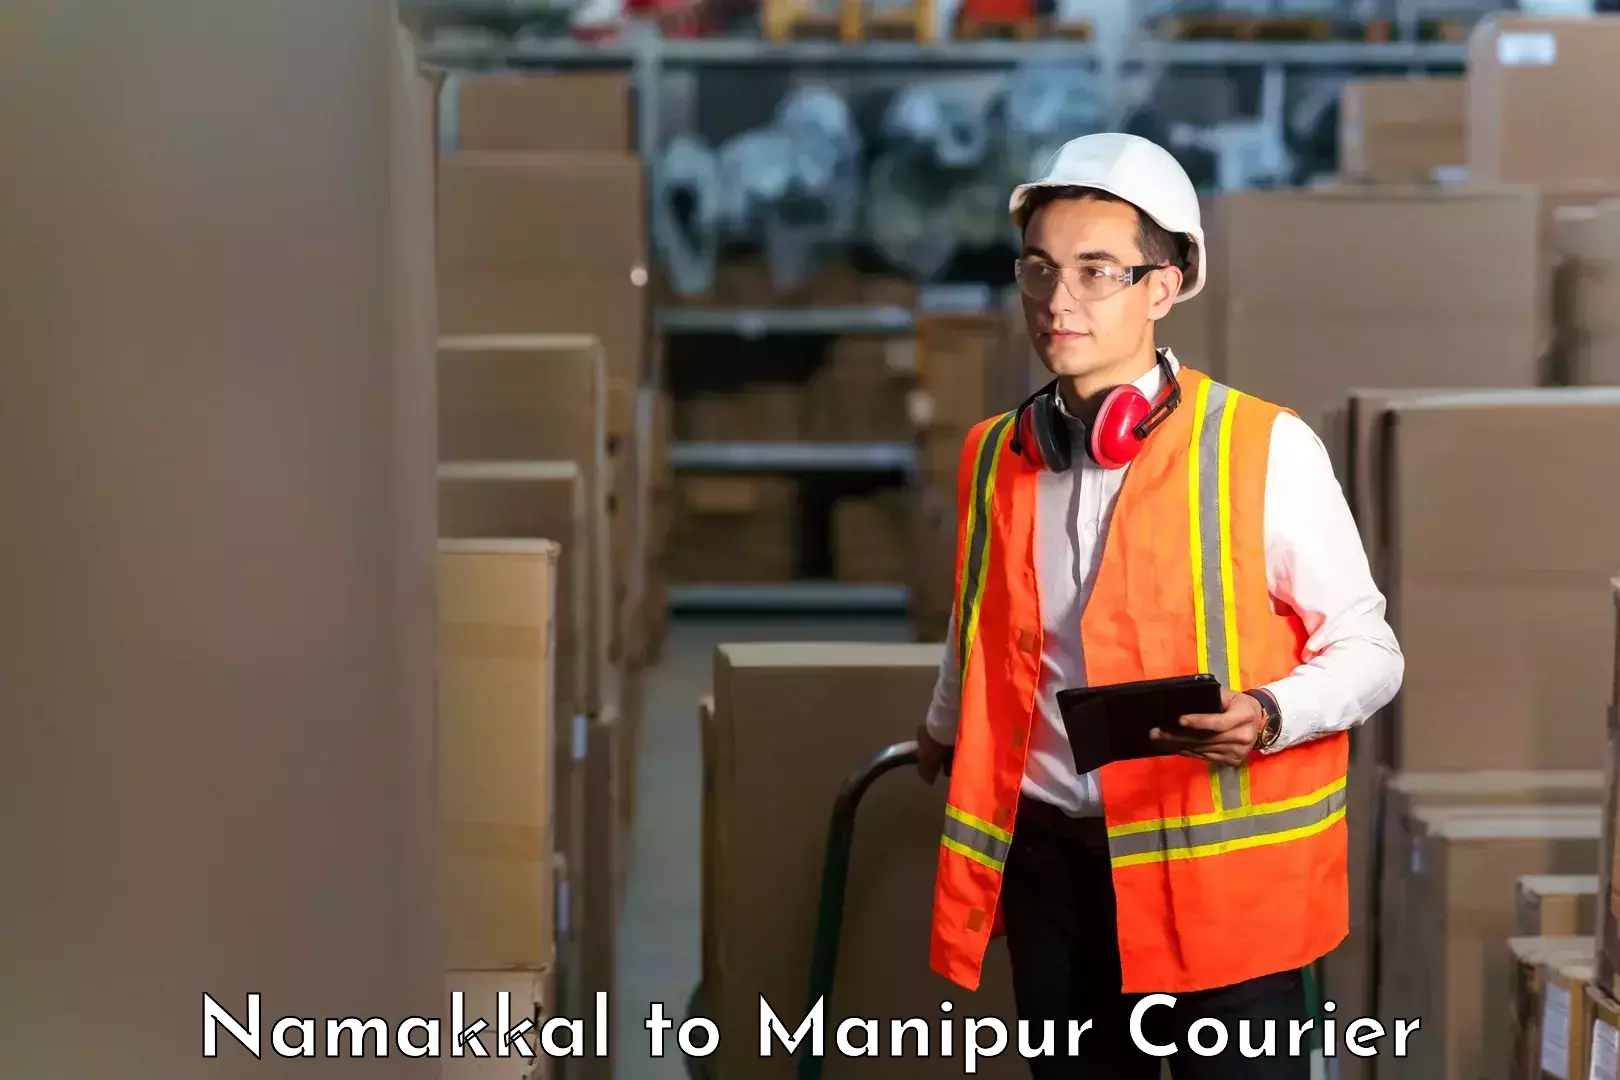 Smart shipping technology Namakkal to Senapati